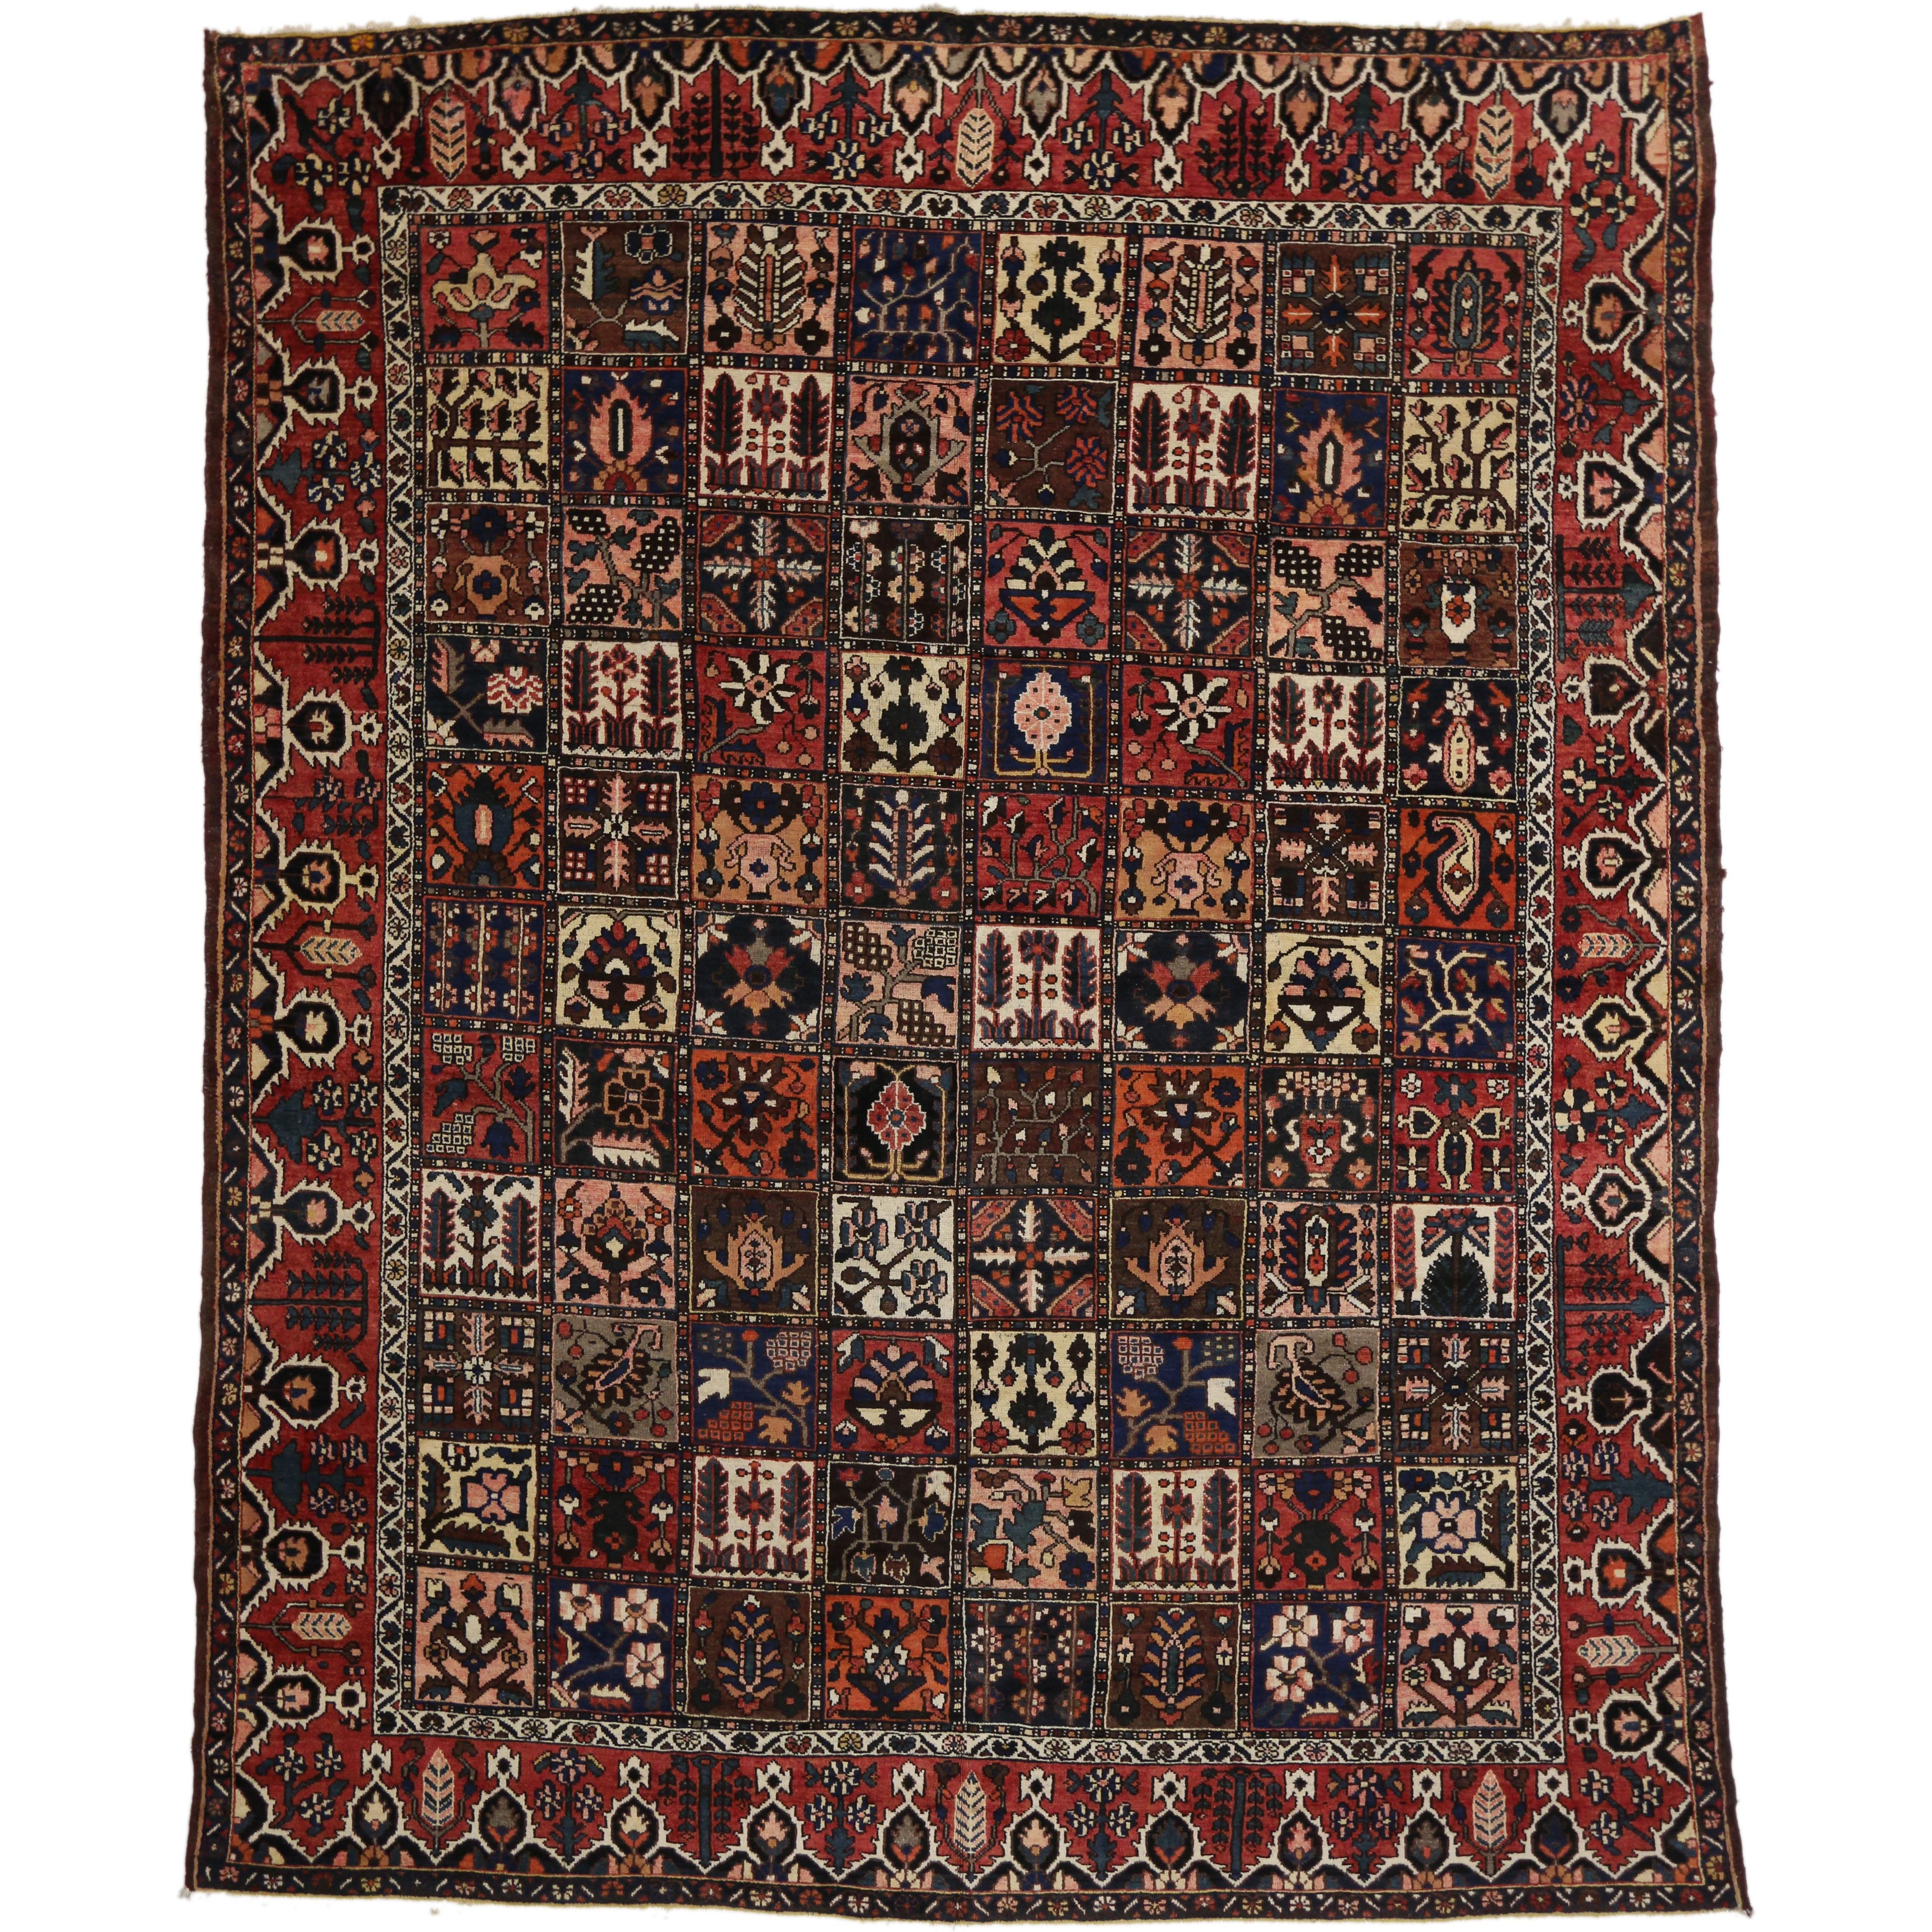 Antique Persian Bakhtiari Rug with Four Season Garden Design For Sale